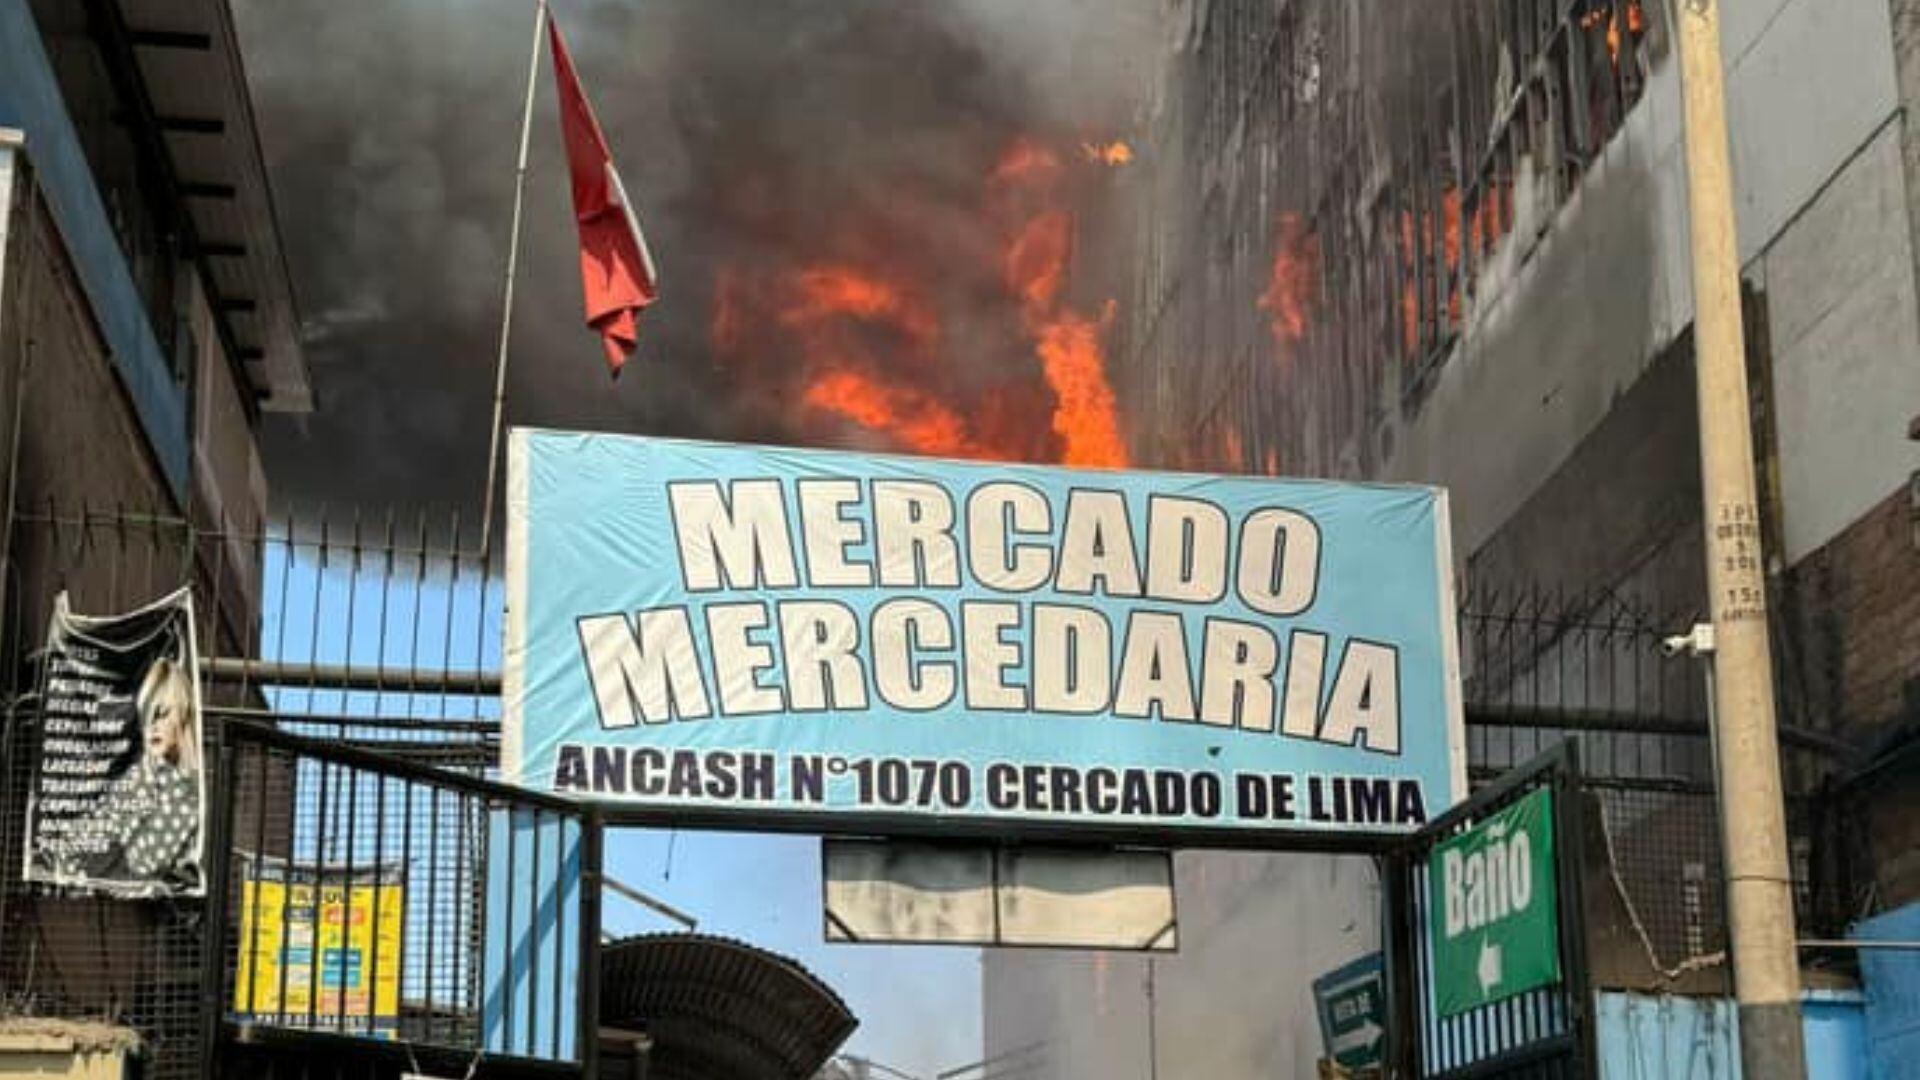 Comerciantes del mercado Mercedaria no podrán trabajar un mes por fuerte incendio en Cercado de Lima